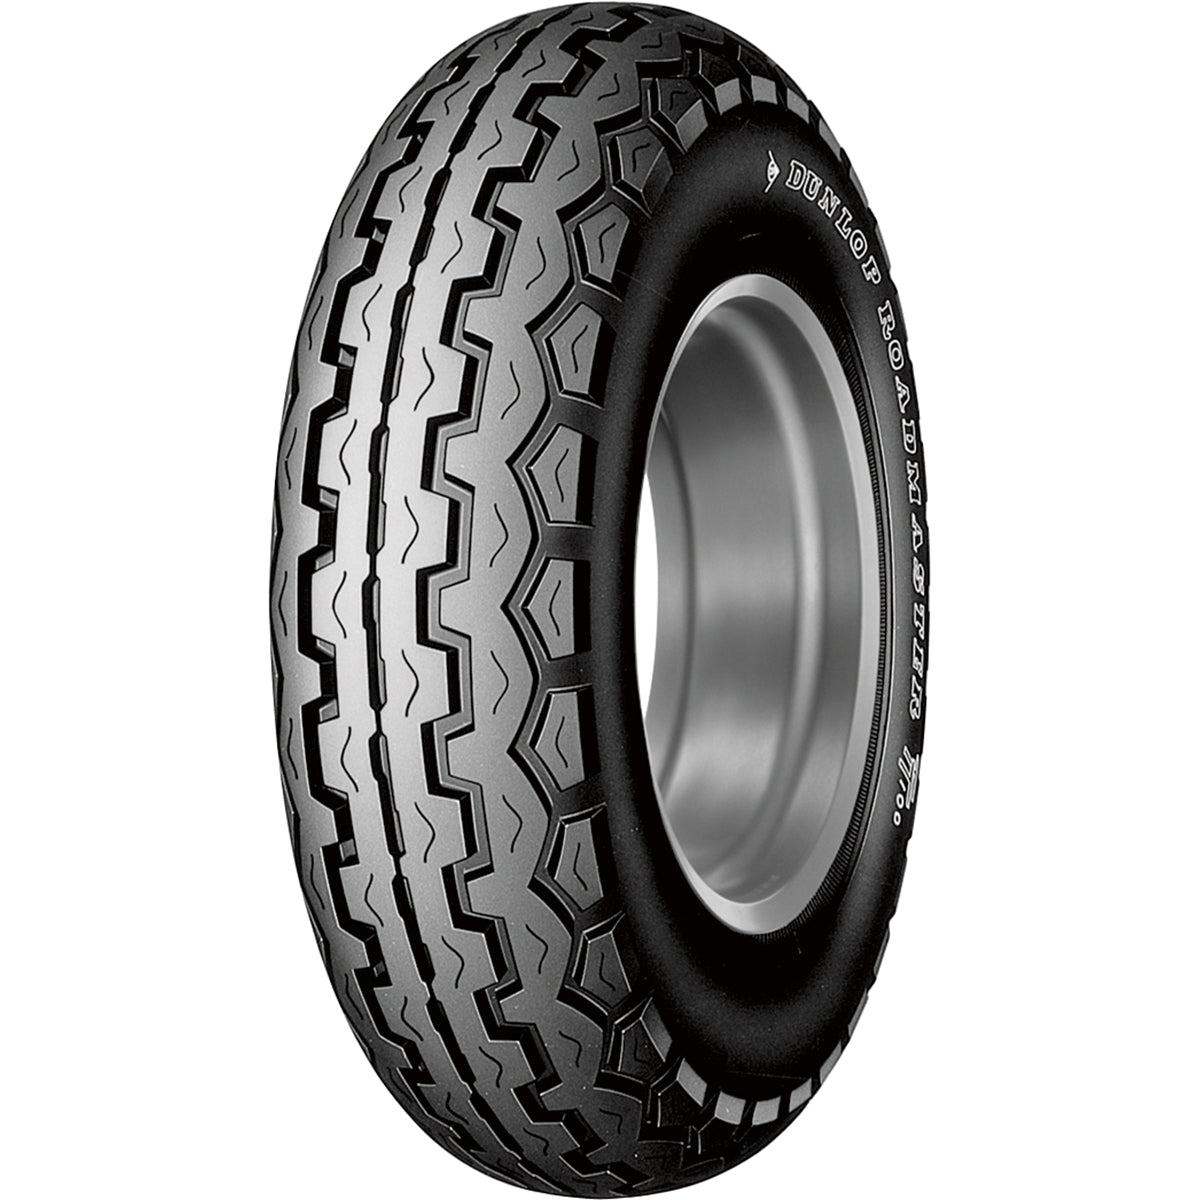 Dunlop TT100-K70/K81 19" Front Street Tires-4206